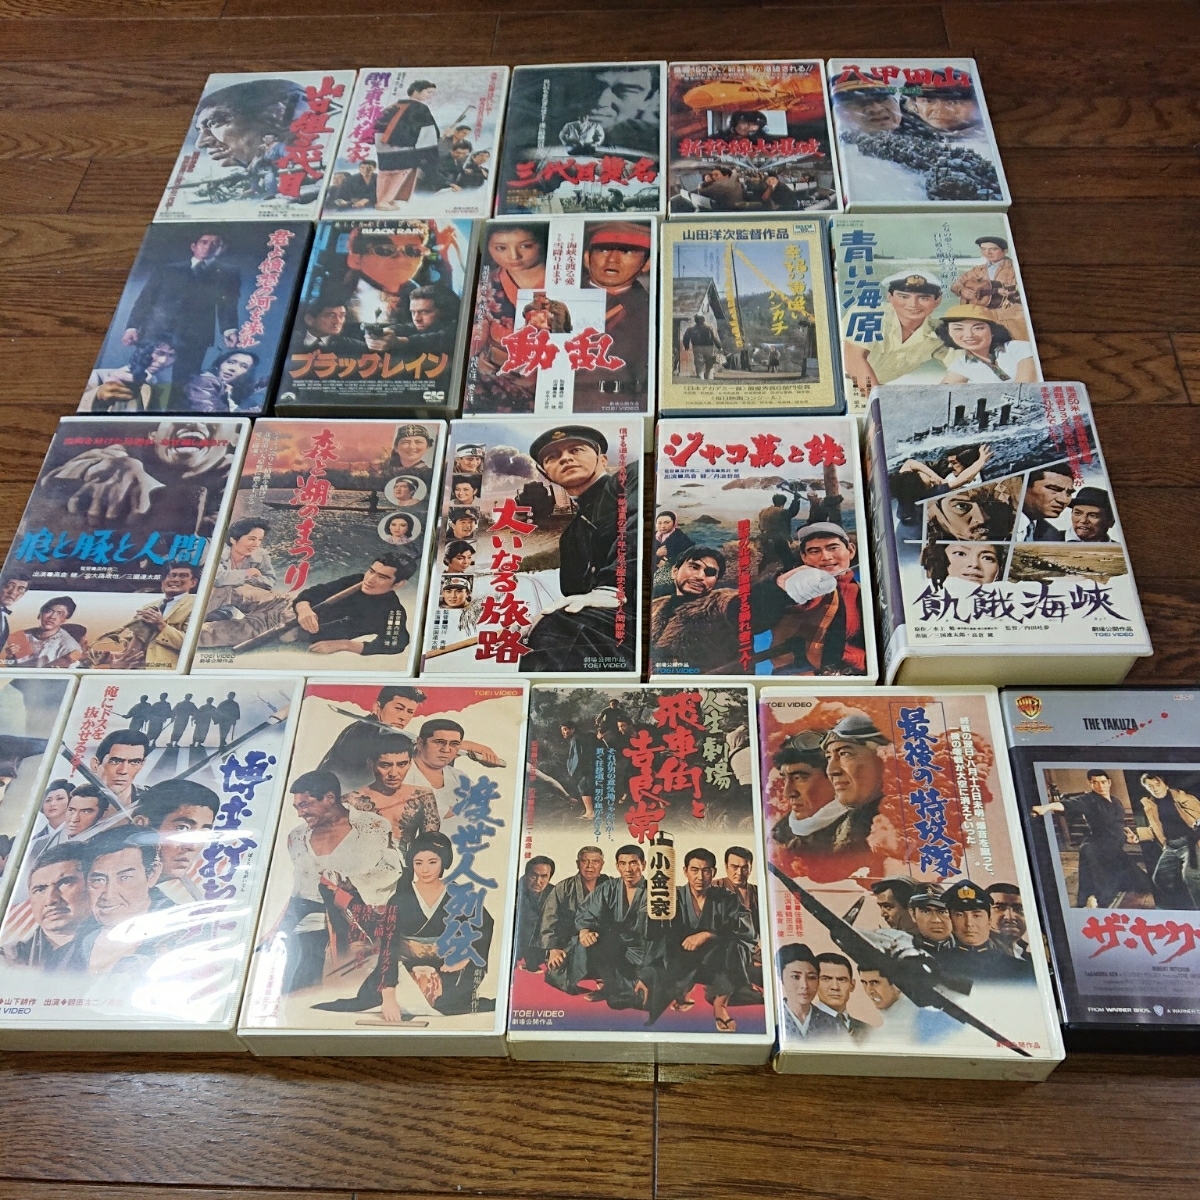 高倉健 名作映画 VHSビデオ 21本セット バラ売り可 美空ひばり、三國